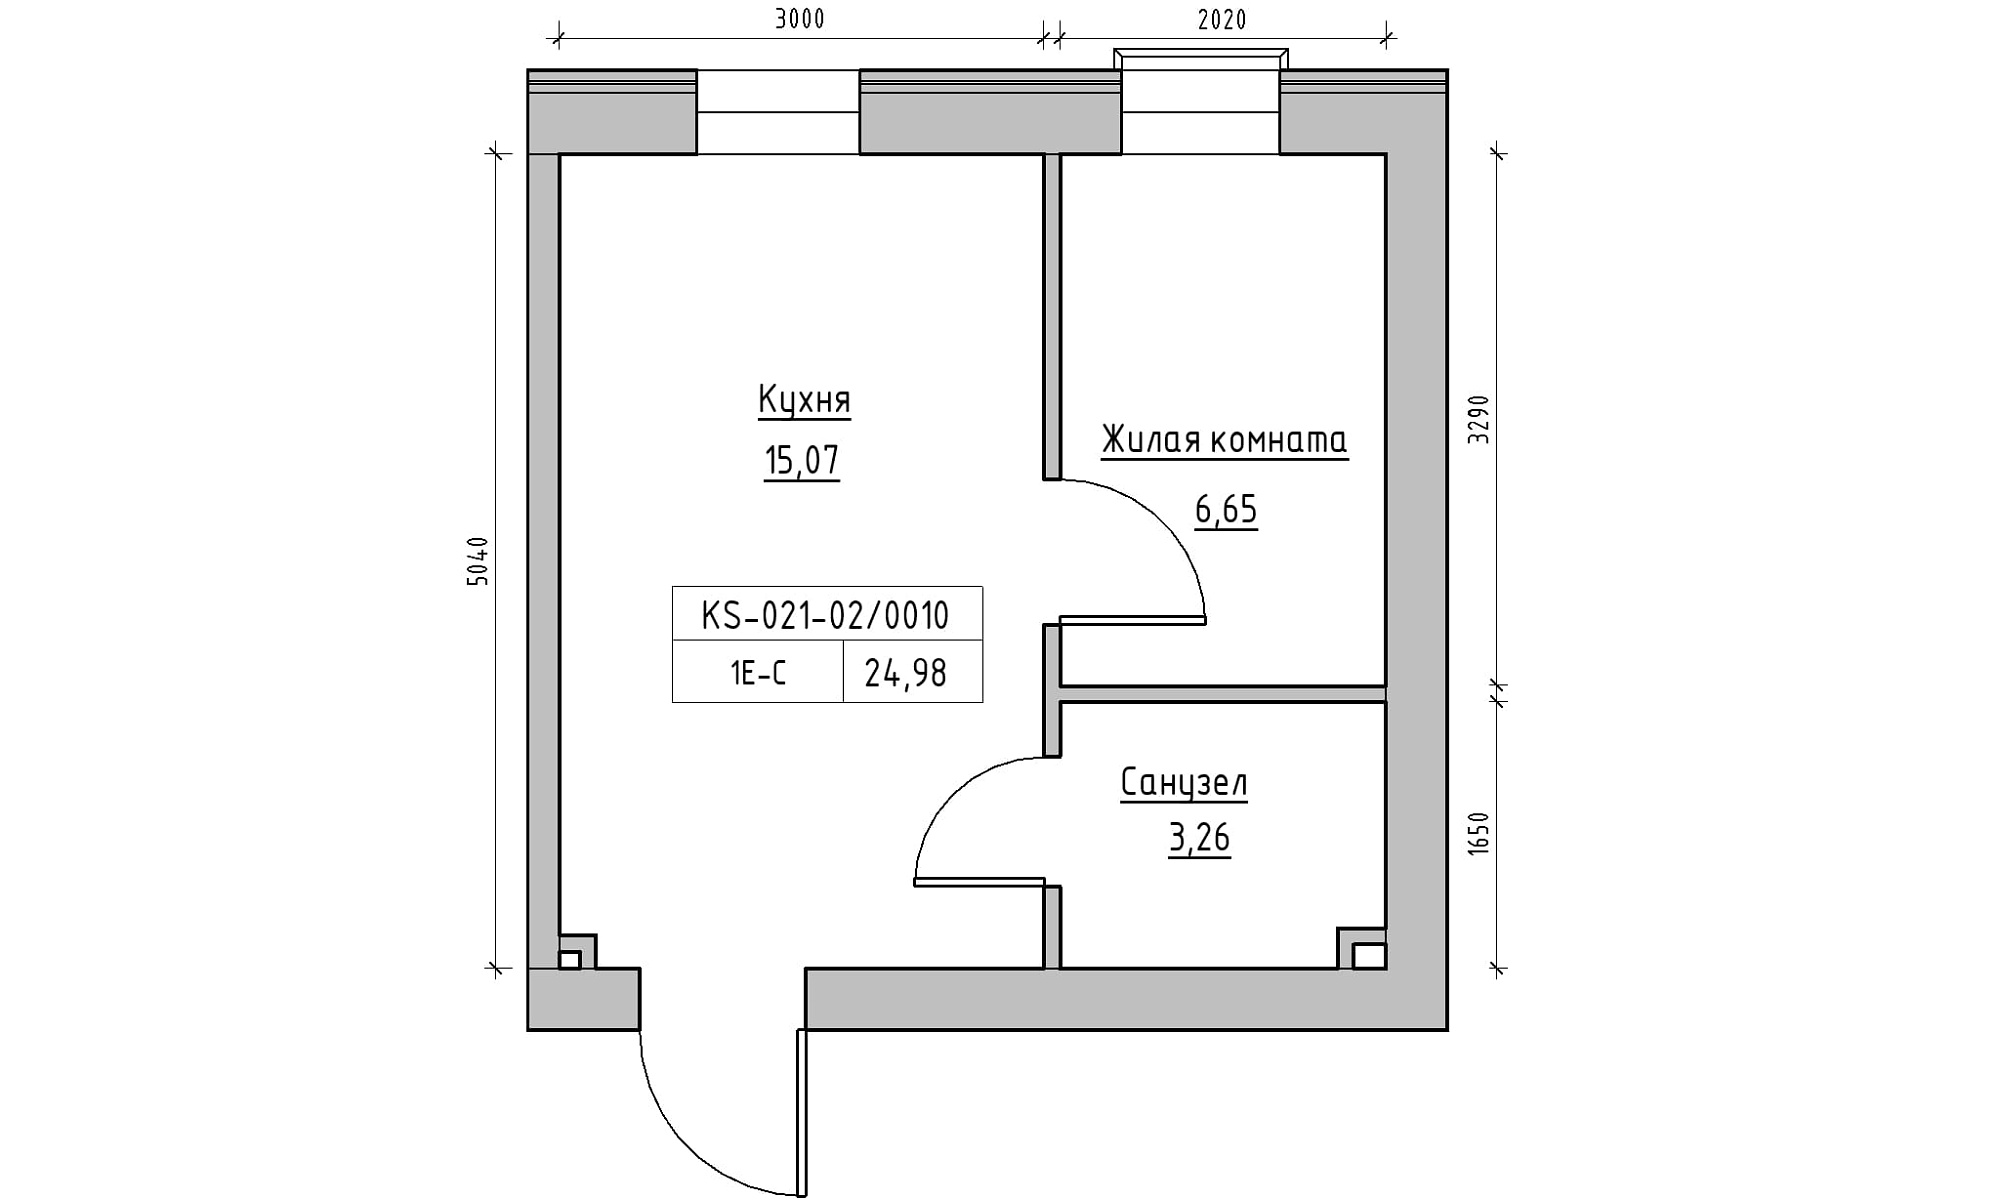 Планування 1-к квартира площею 24.98м2, KS-021-02/0010.